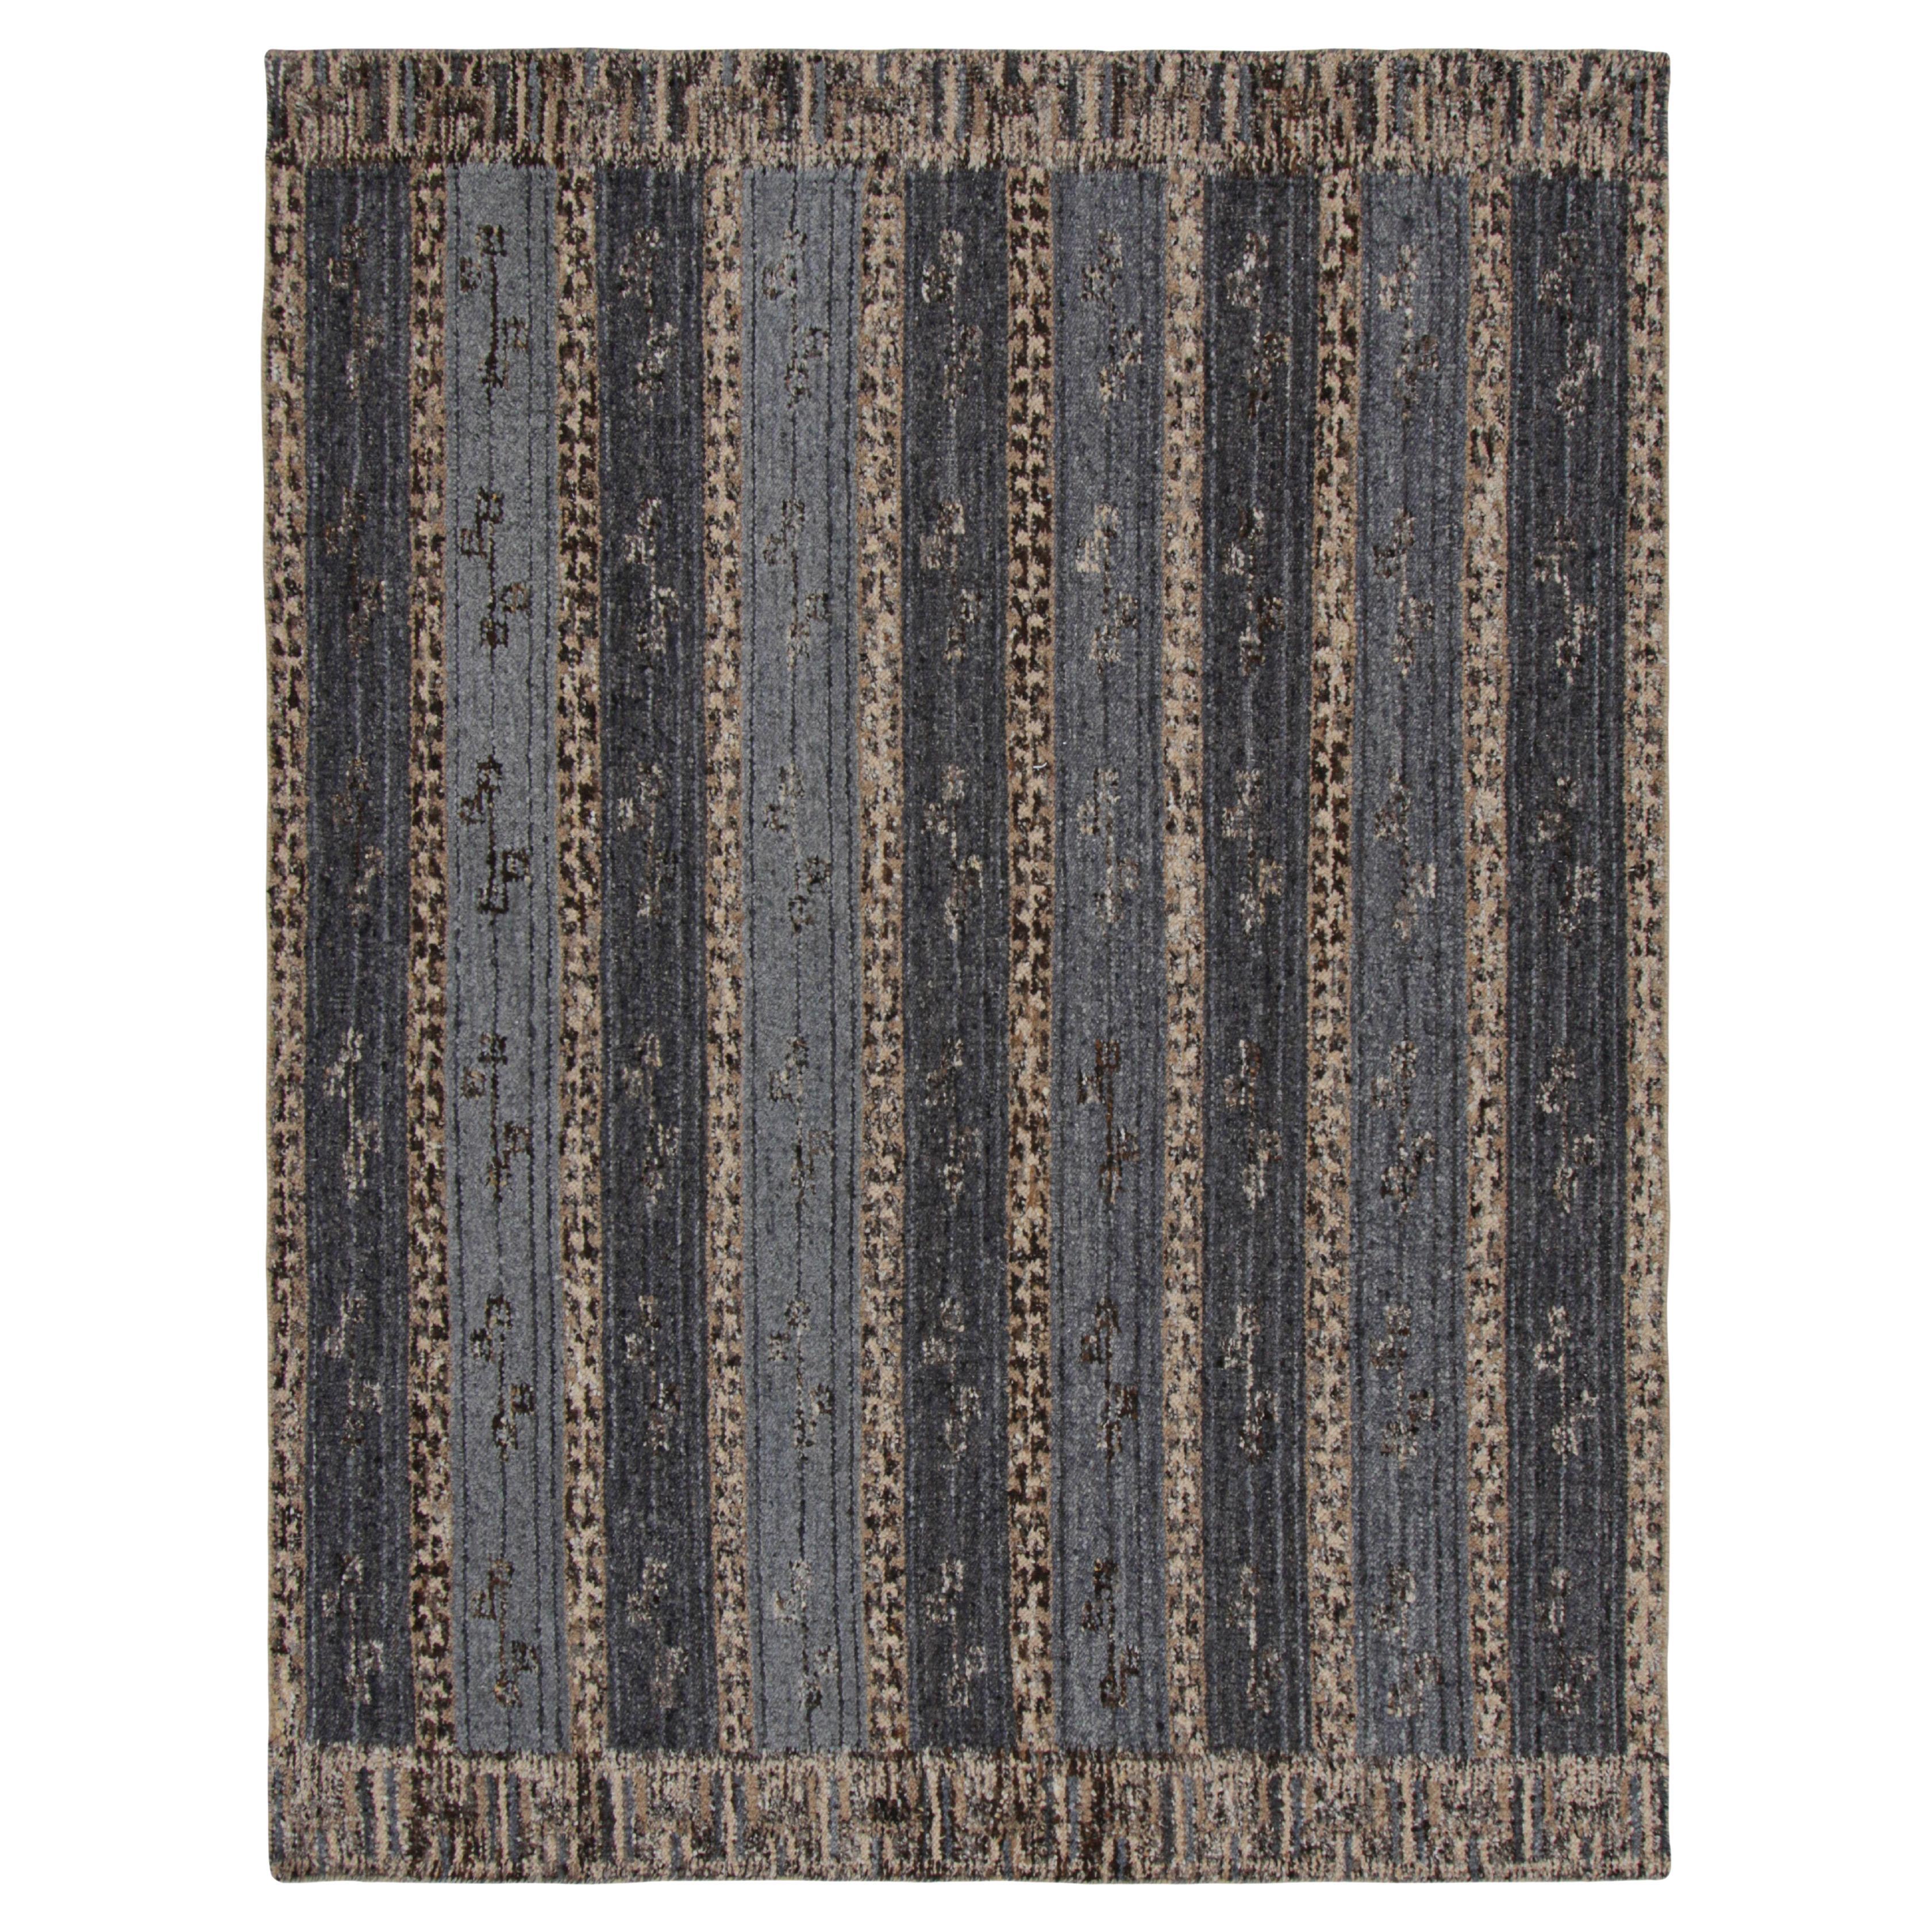 Rug & Kilim's Teppich im skandinavischen Stil in Blau mit beige-braunen Streifen